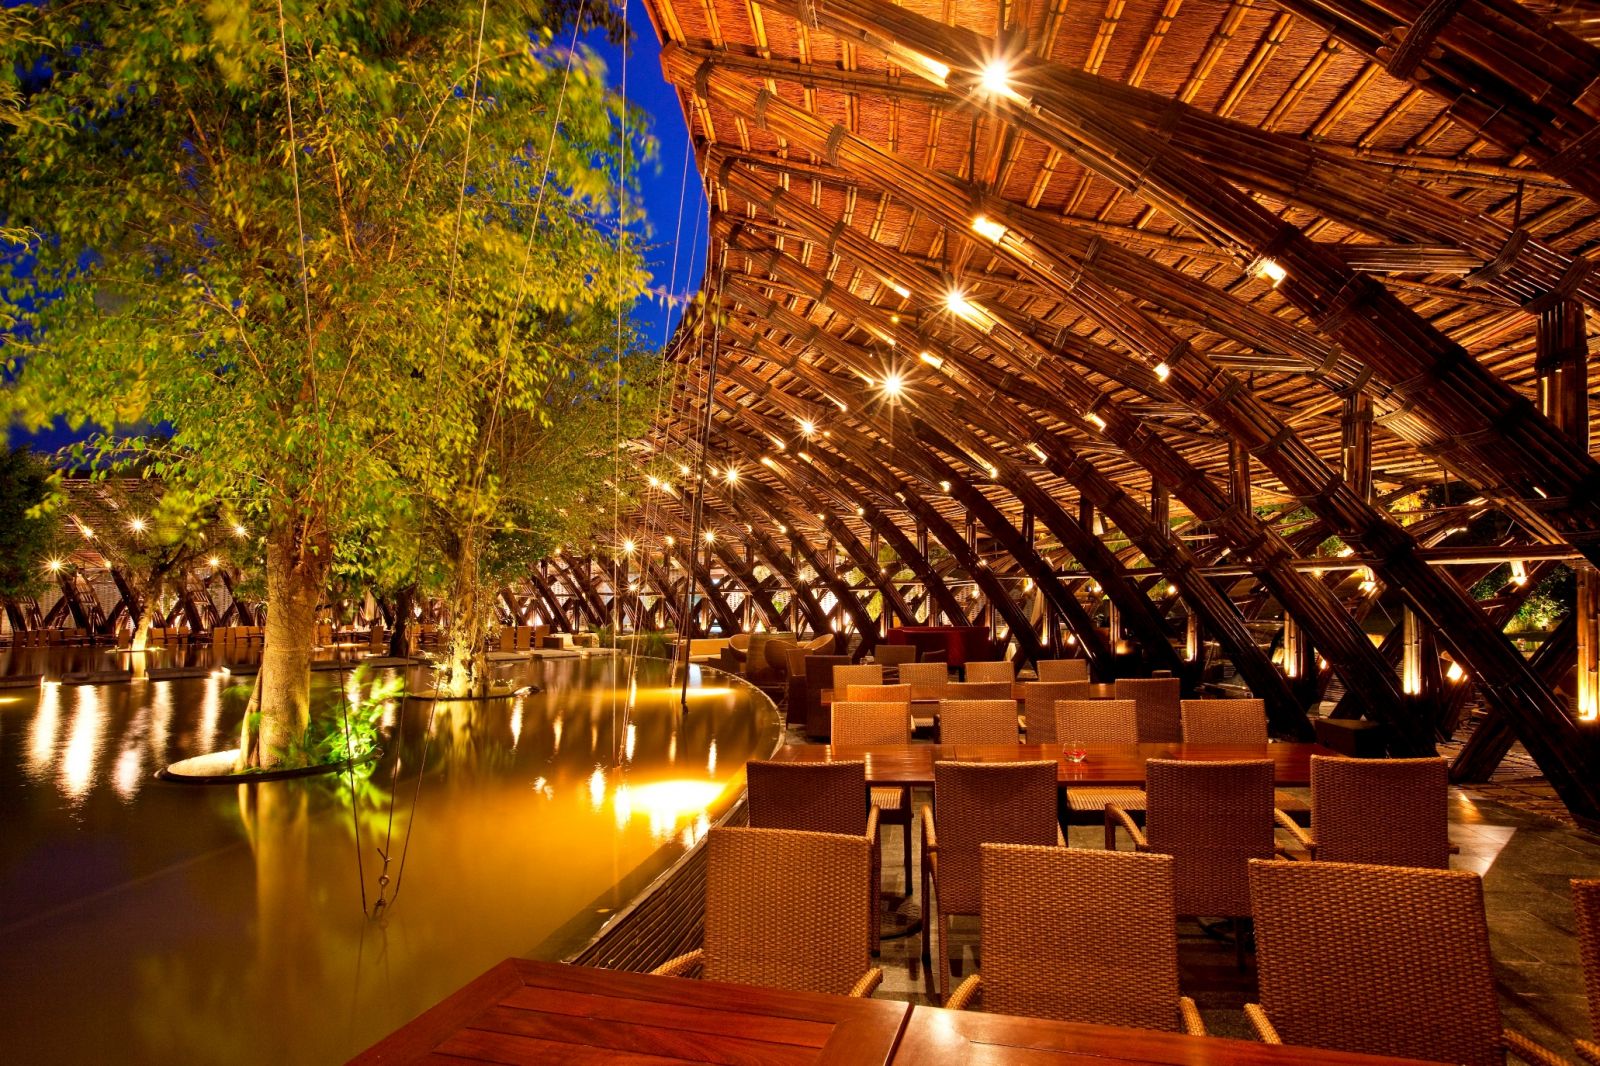 Thuộc hệ thống nhà hàng sang trọng của Flamingo Đại Lải Resort, nhà hàng Bamboo Wings là niềm tự hào của kiến trúc Việt với nhiều giải thưởng quốc tế như International Architecture Awards hay Green Architecture